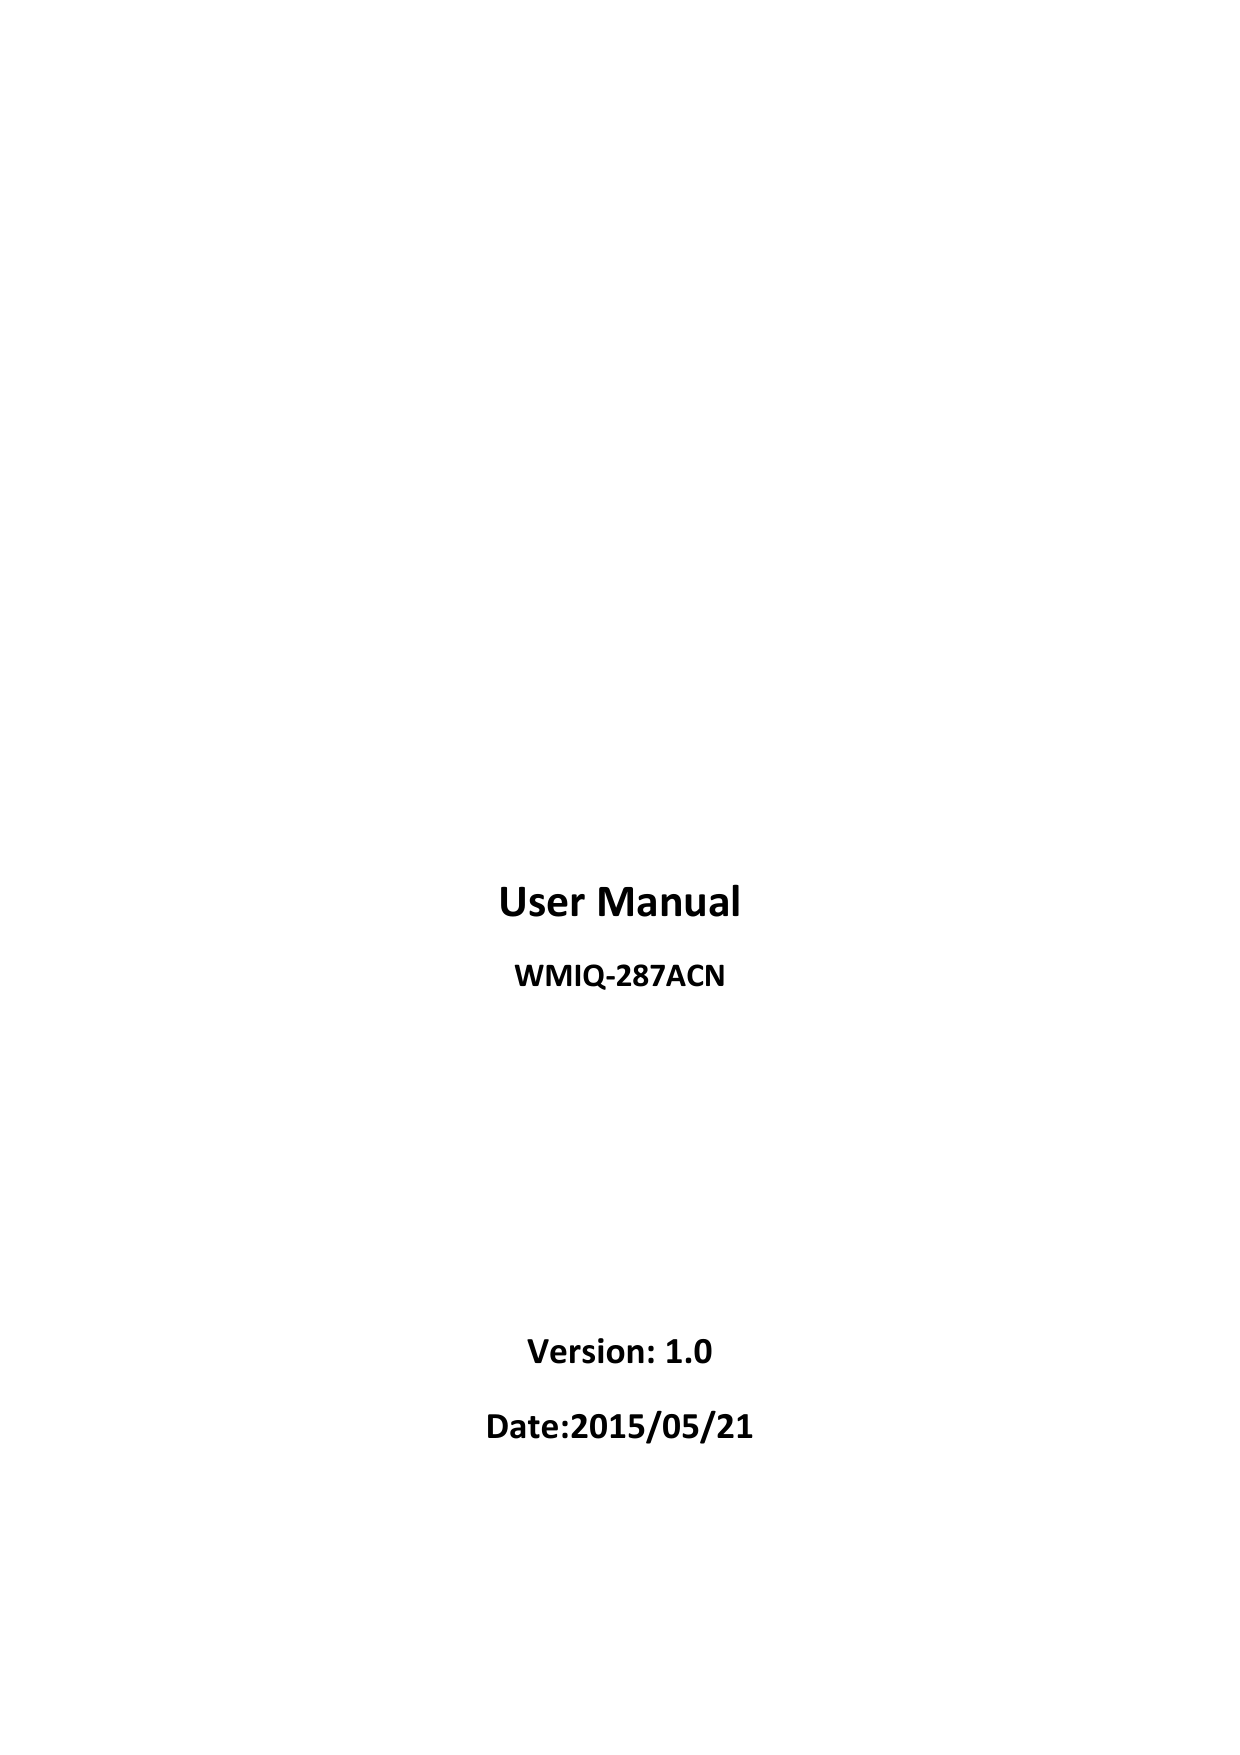                                                          User Manual WMIQ-287ACN     Version: 1.0 Date:2015/05/21   